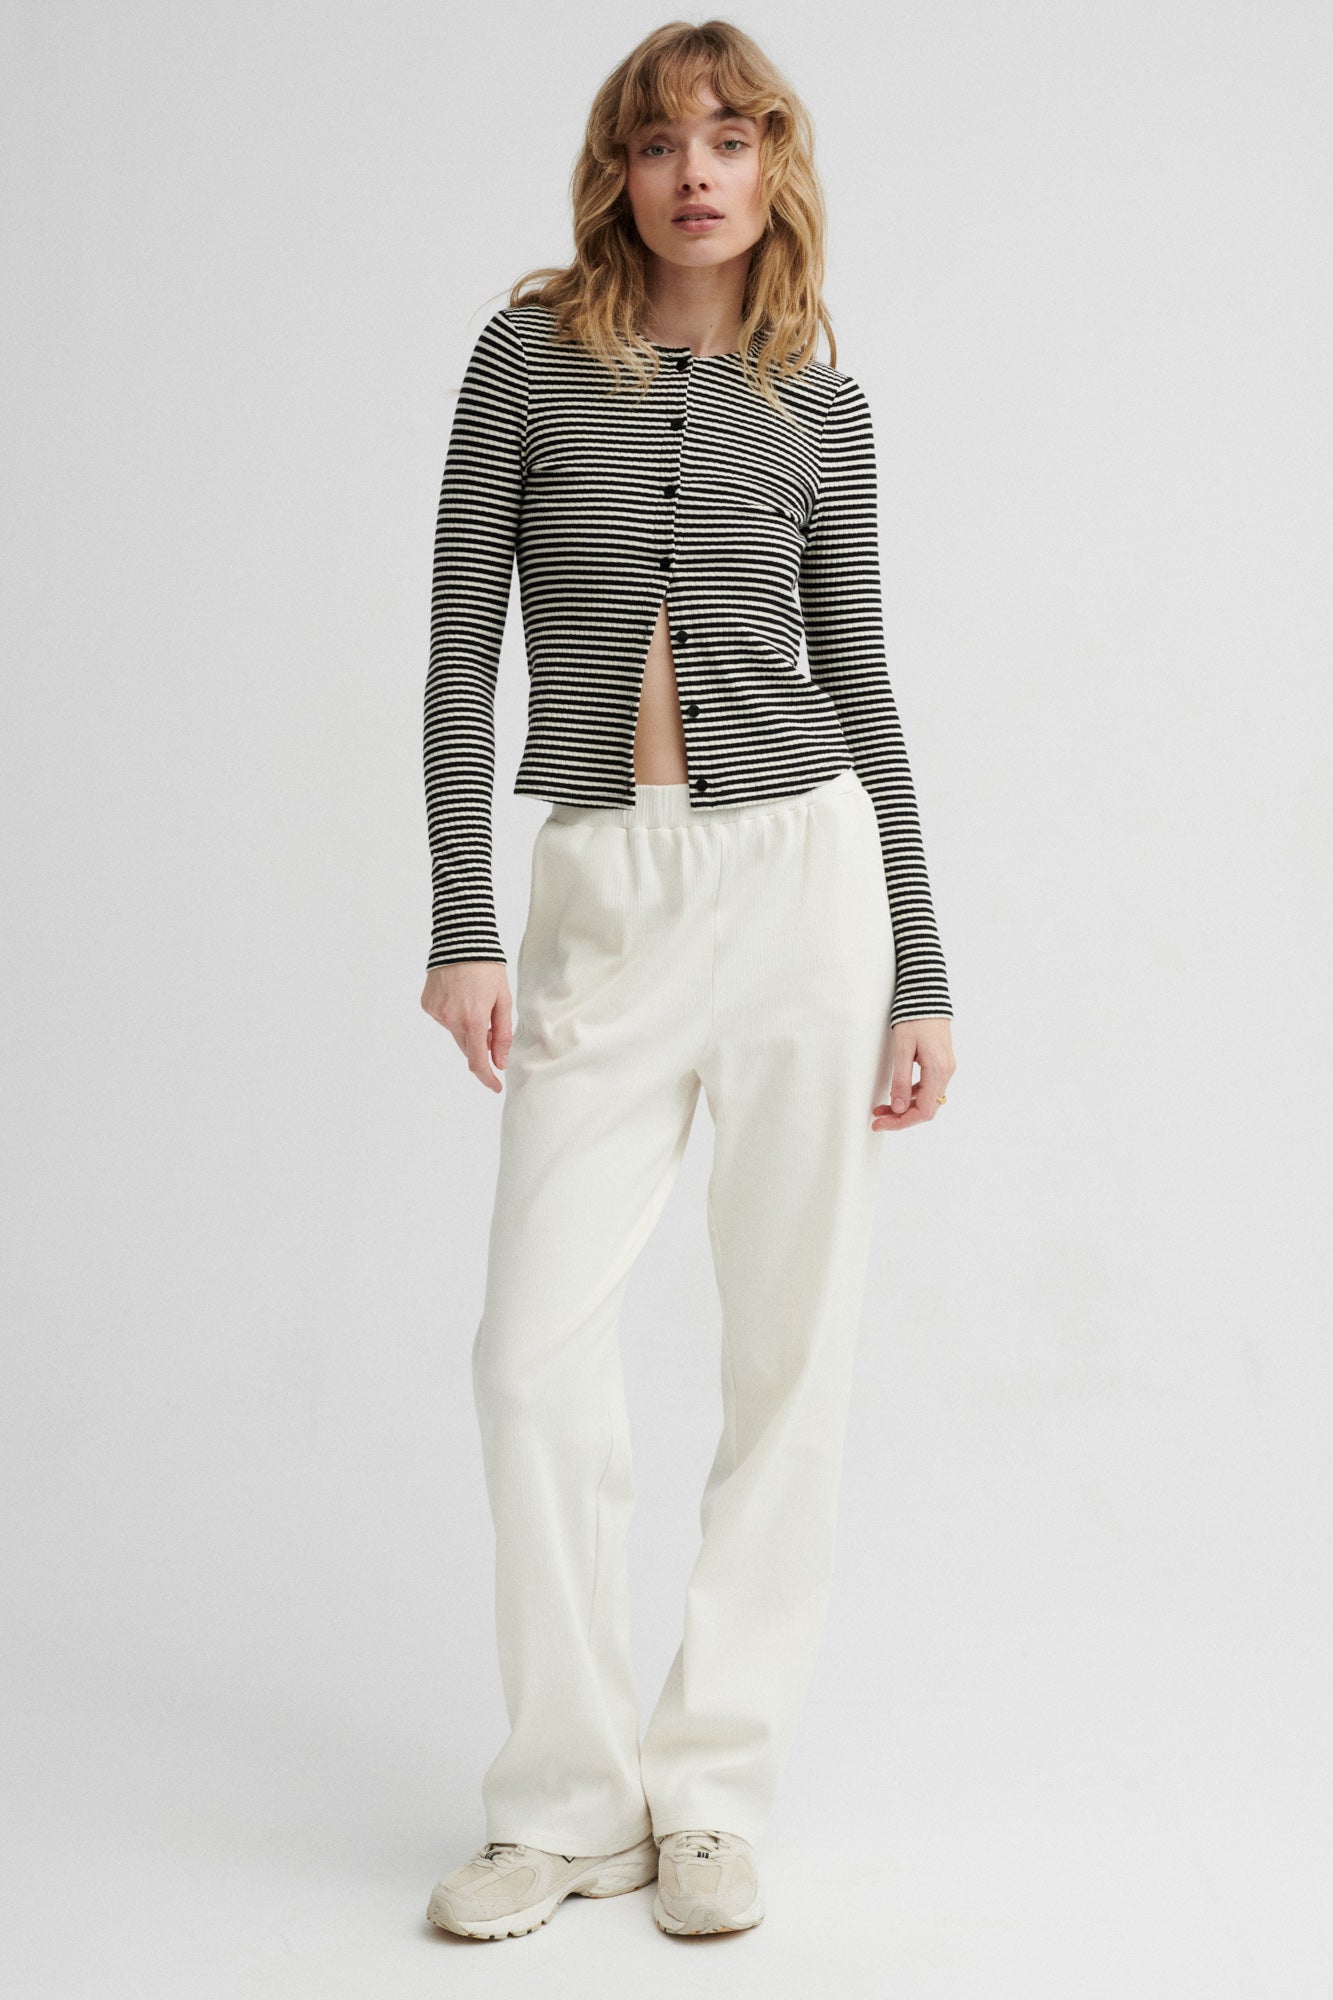 Spodnie z bawełny organicznej / 04 / 14 / cream white *longsleeve-z-bawelny-14-24-black-stripes* ?Modelka ma 179cm wzrostu i prezentuje rozmiar XS?